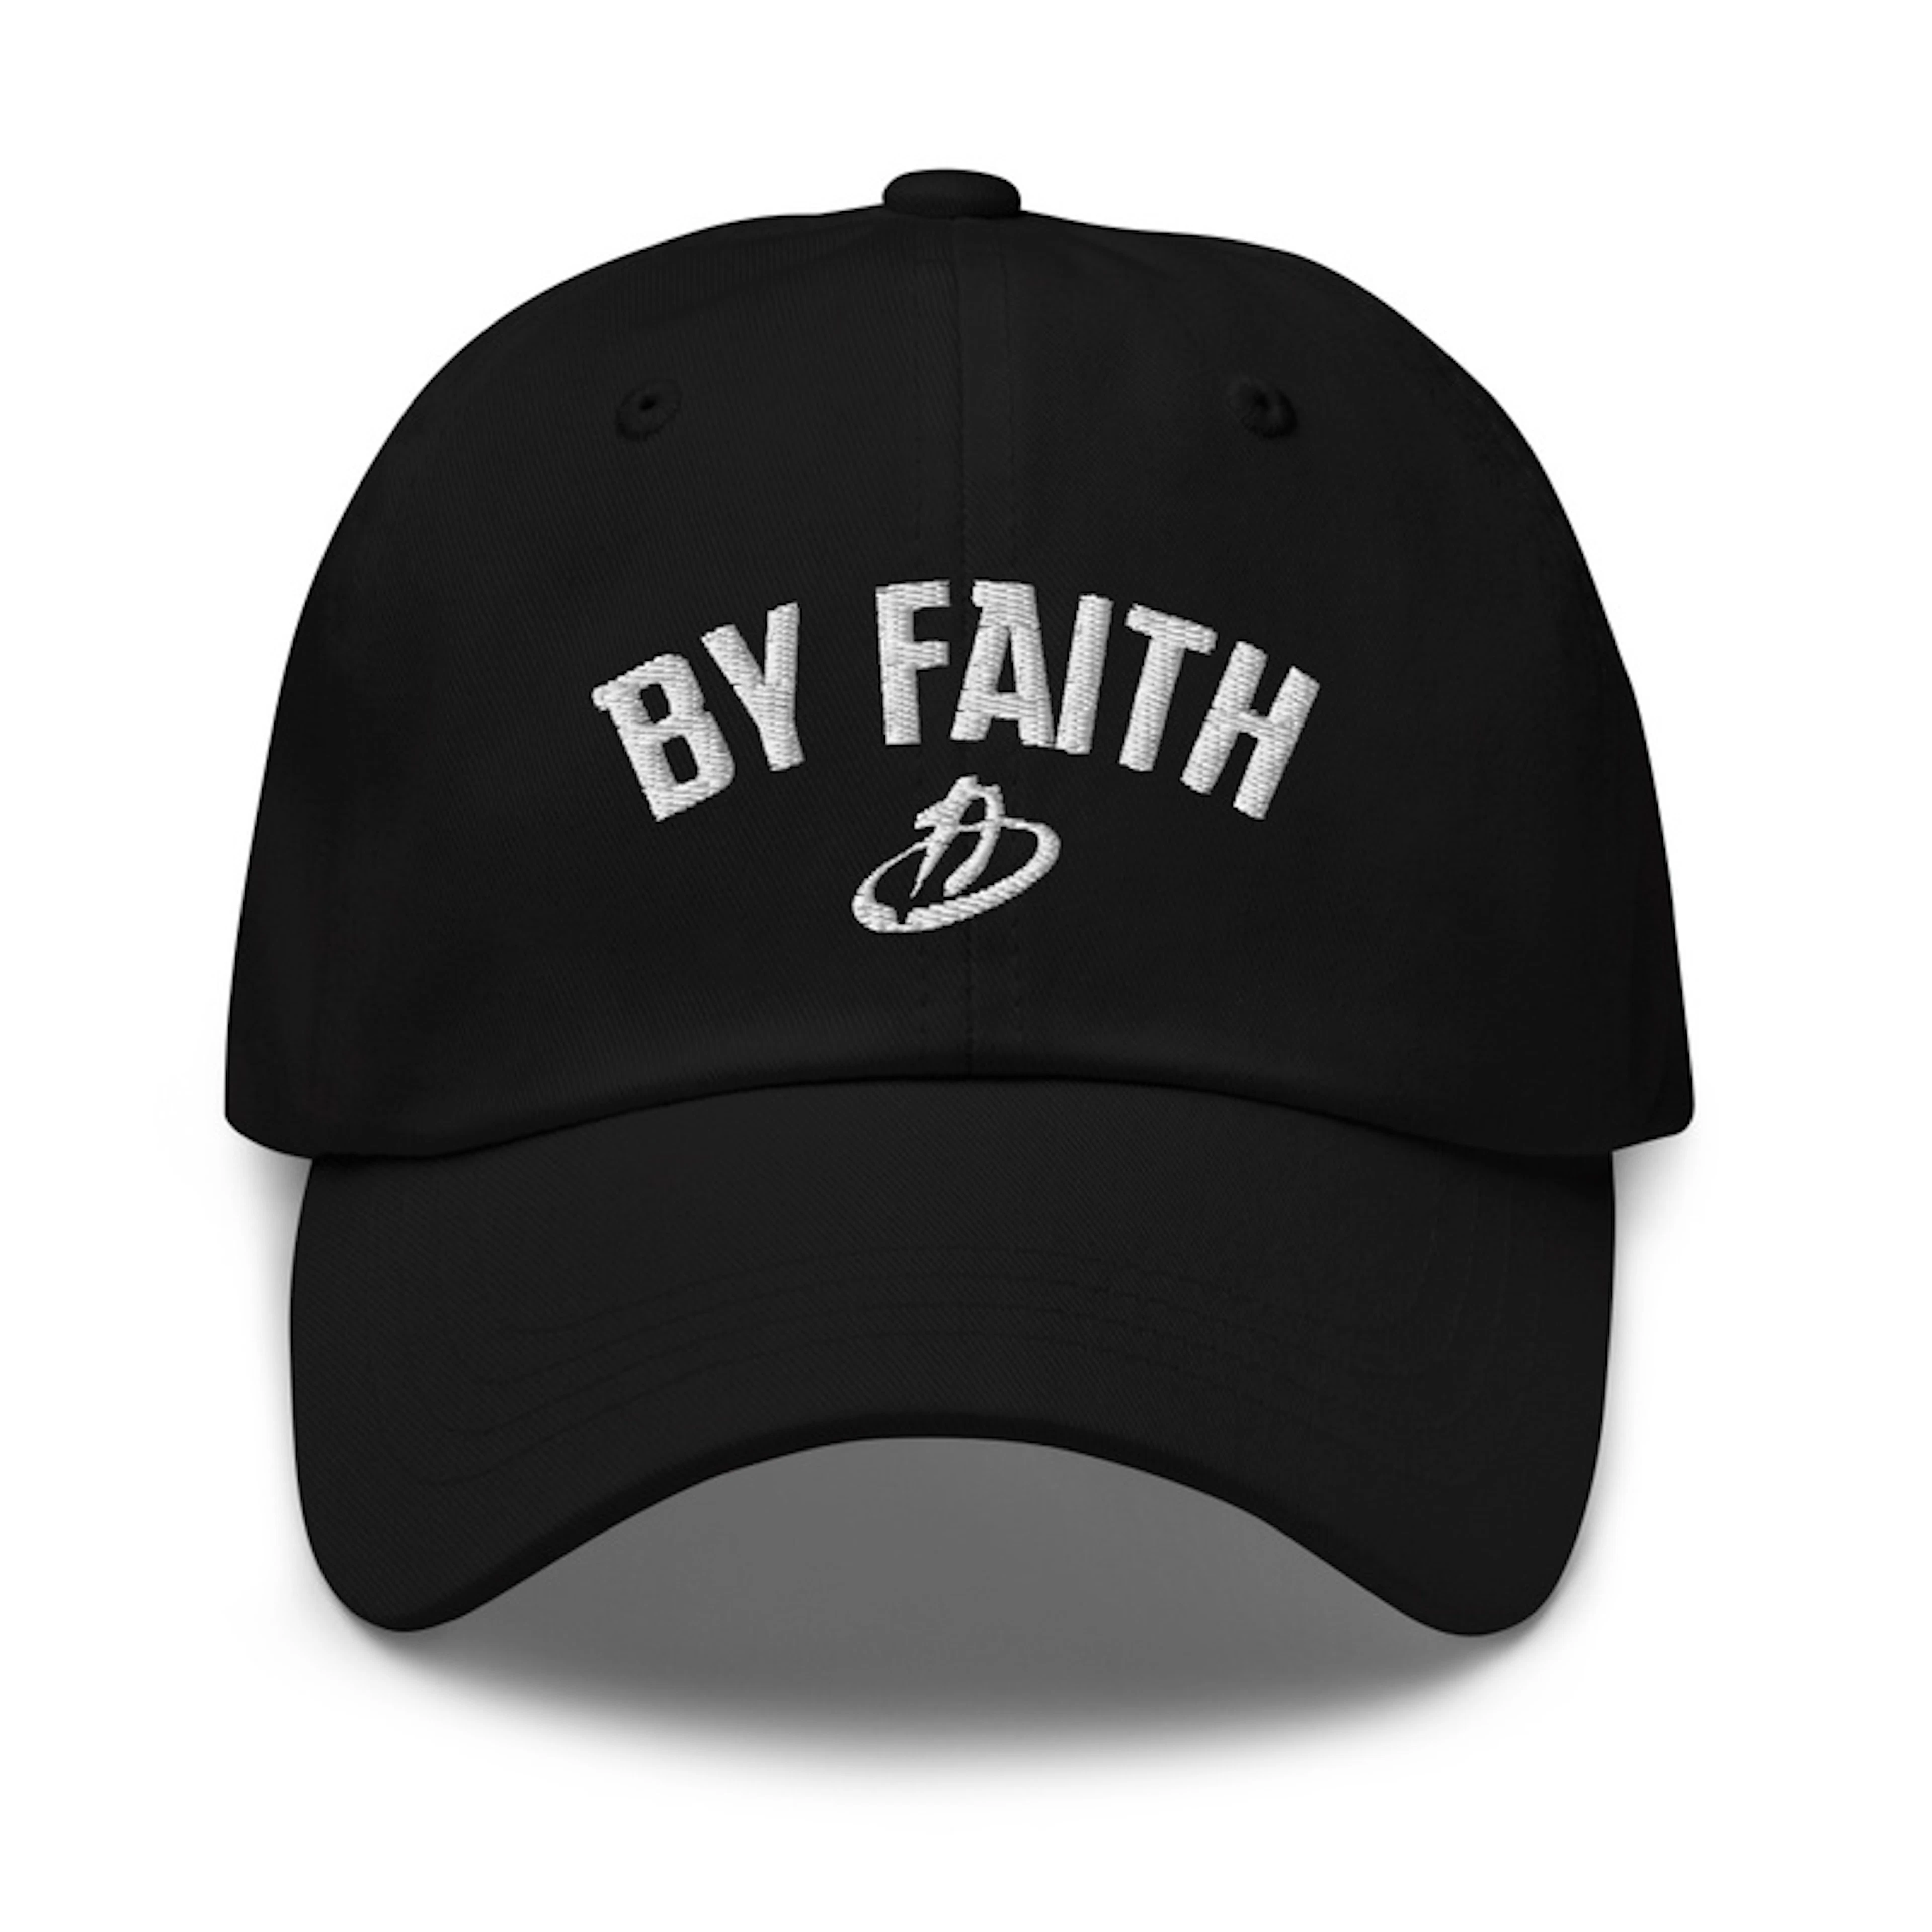 By Faith Cap